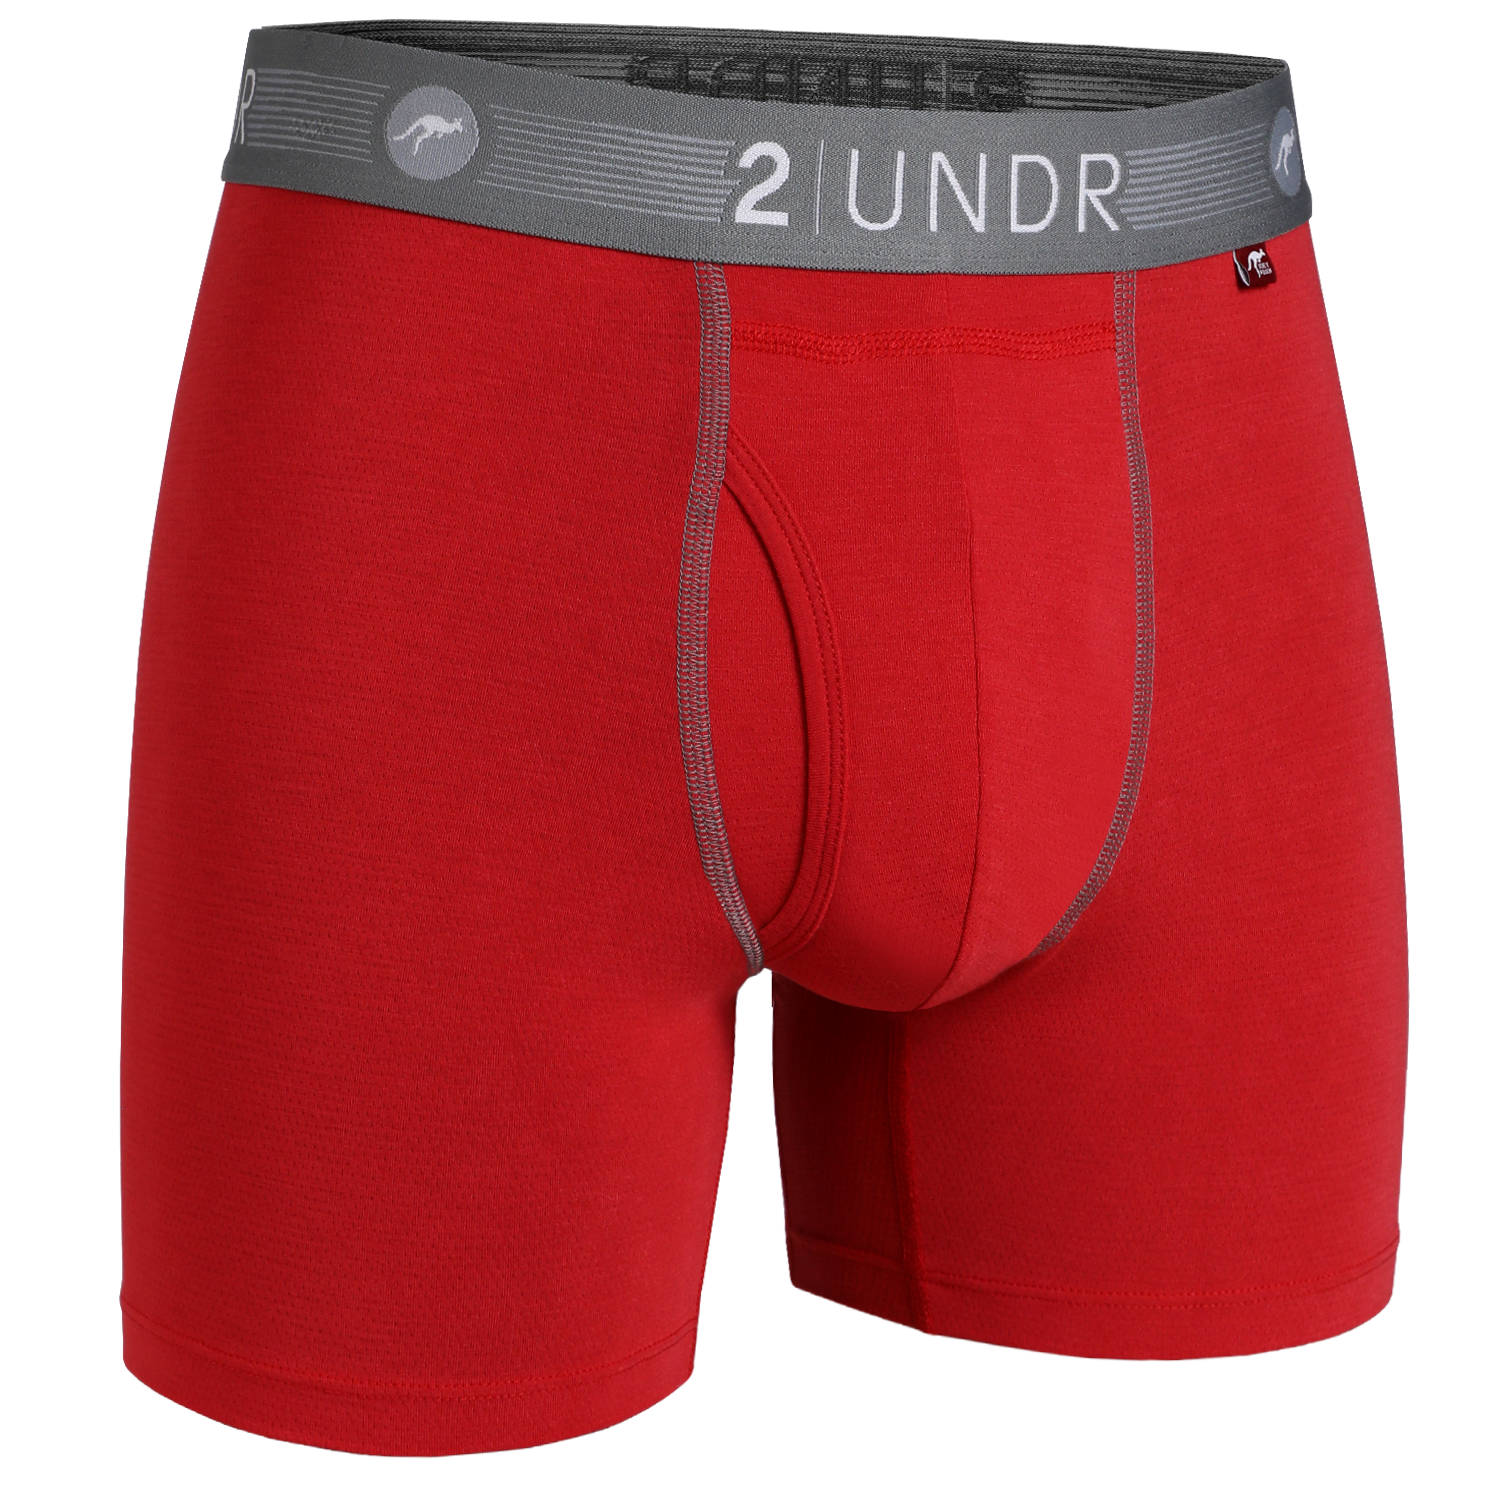 Underwear – 2UNDR